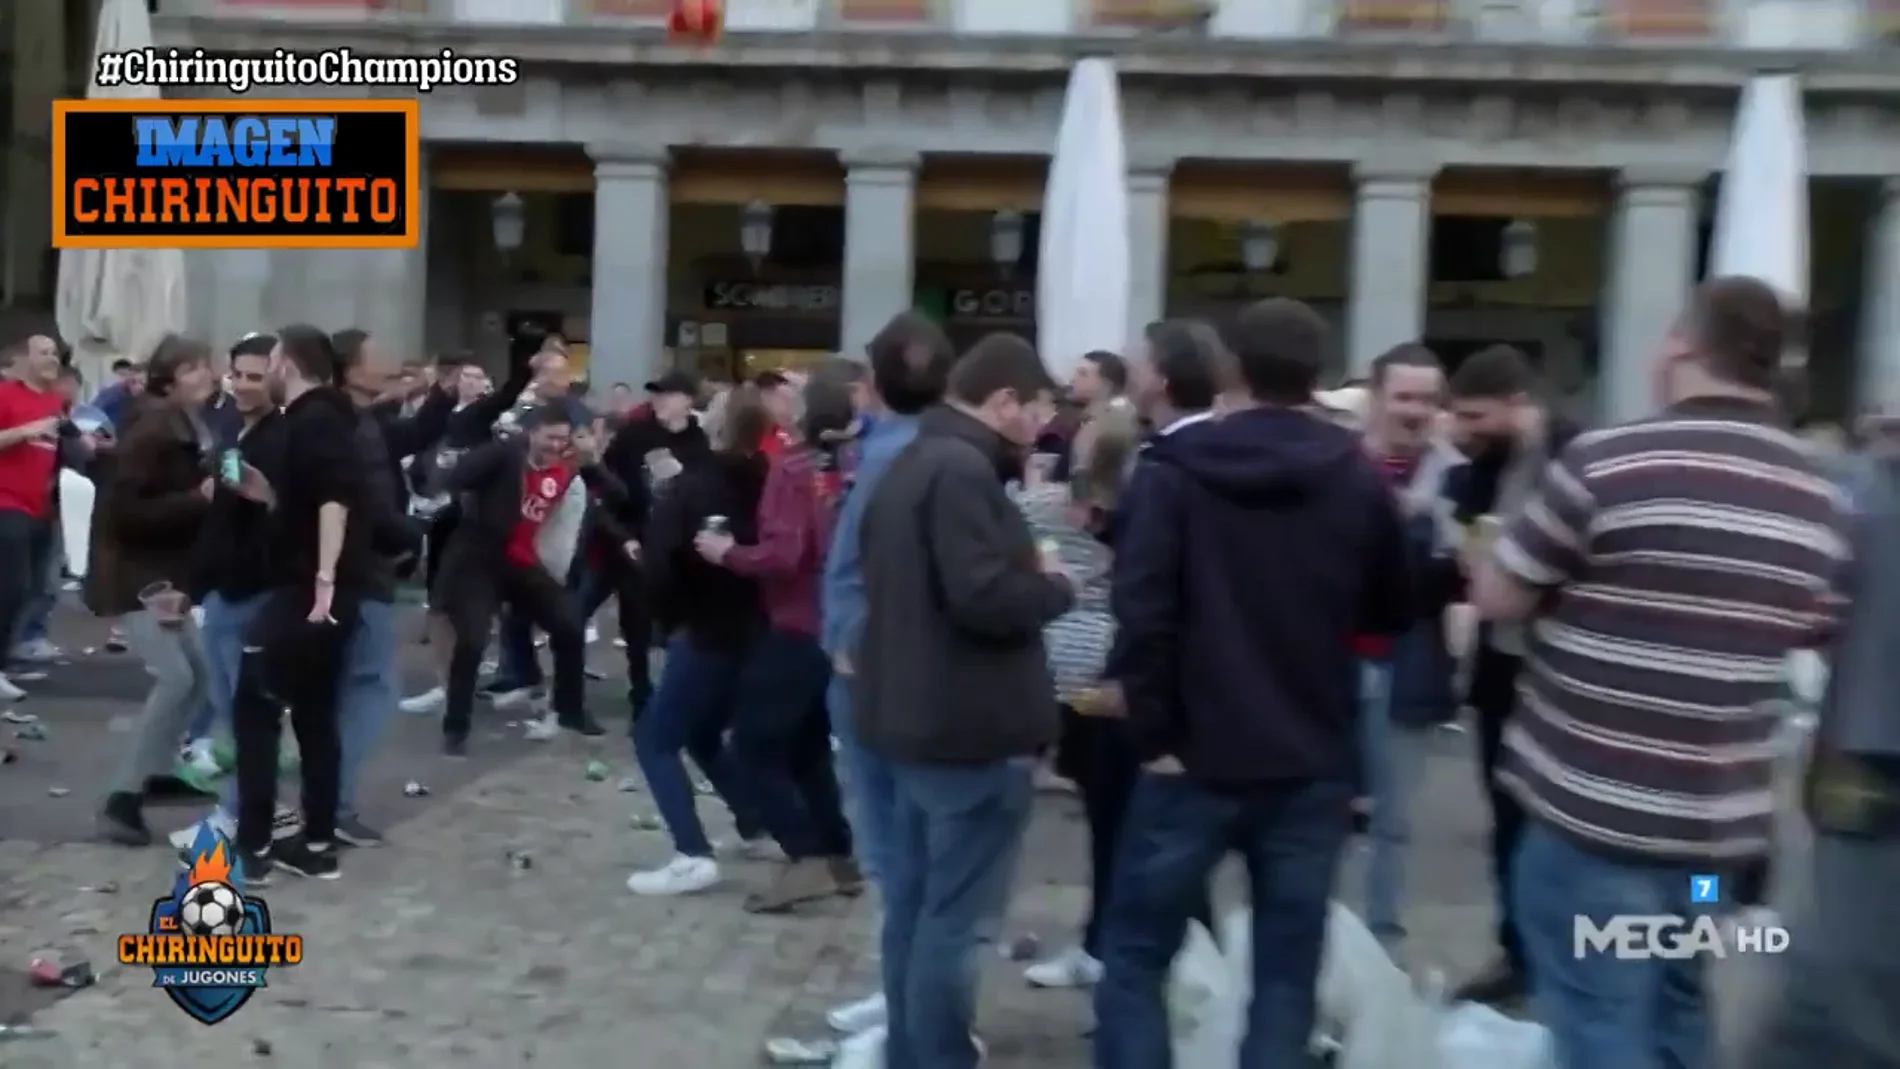 Los hooligans ingleses toman Madrid